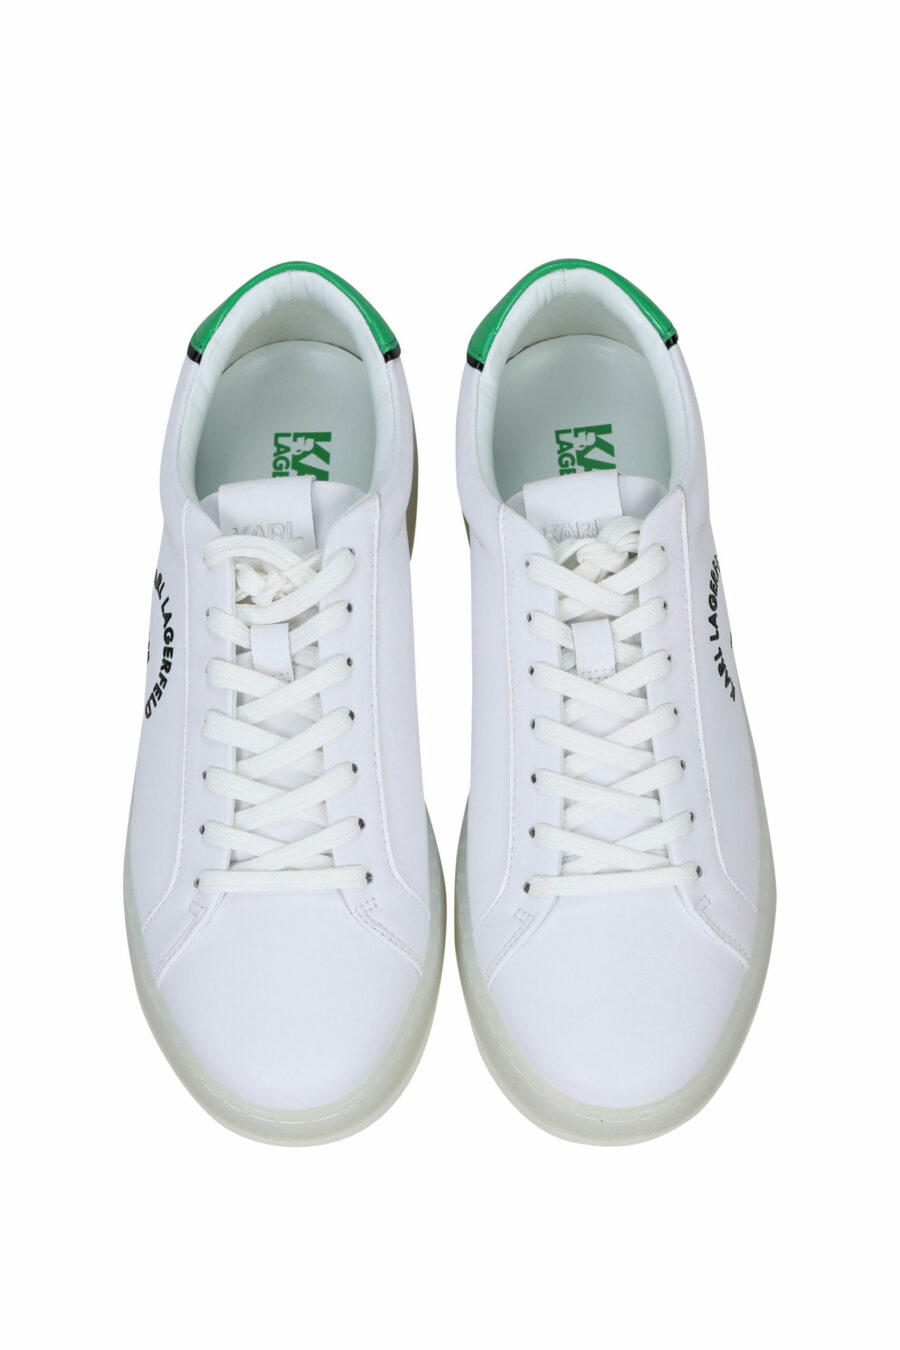 Baskets blanches avec détails verts et logo "st rue guillaume" - 5059529291289 4 scaled